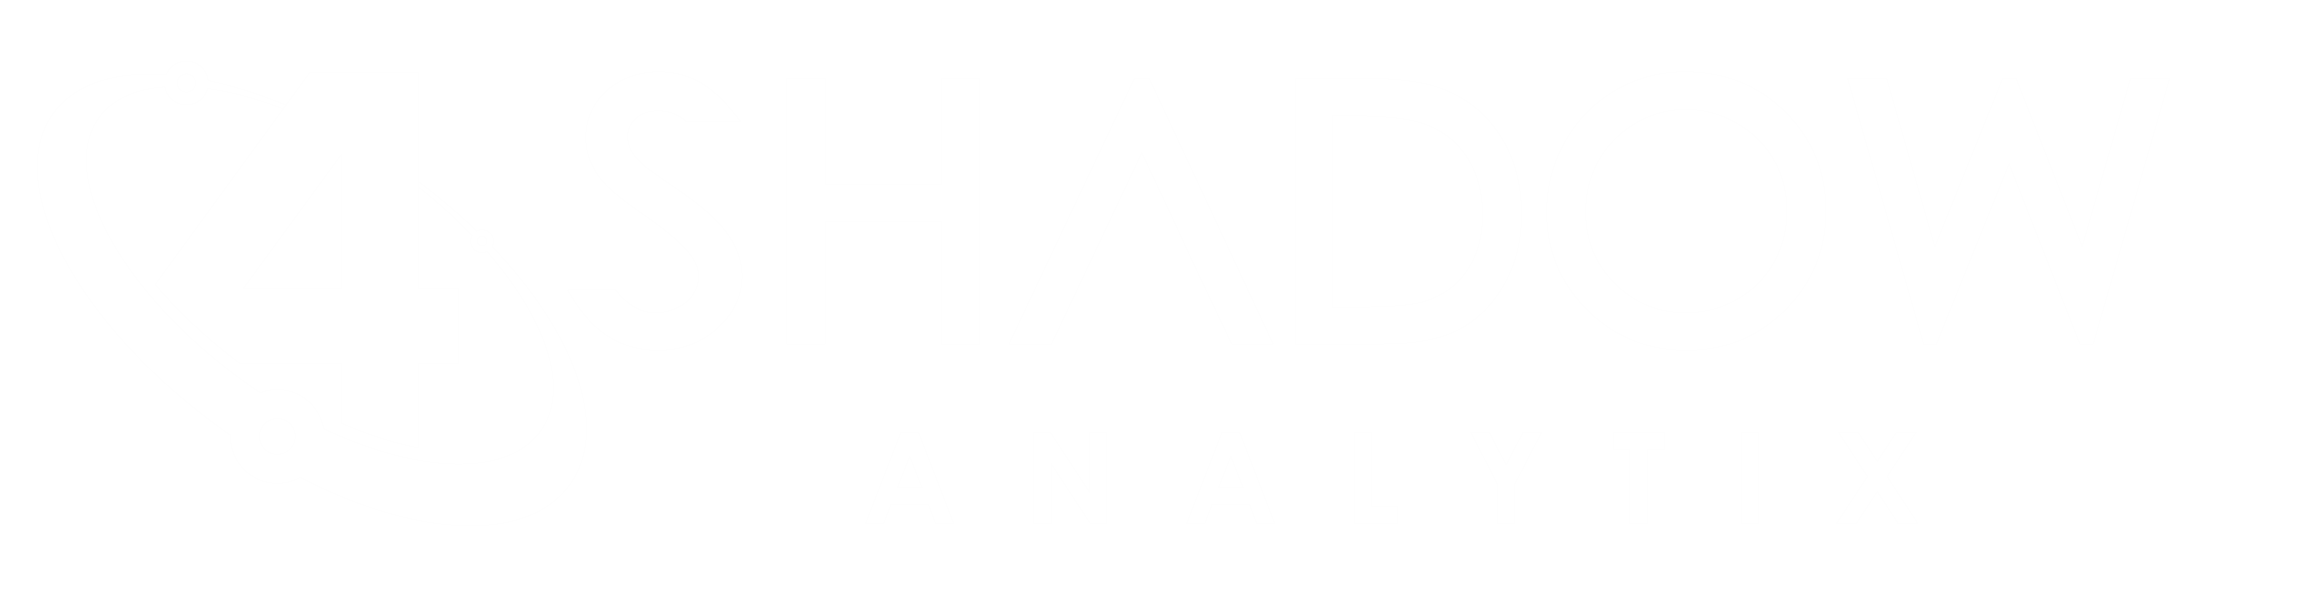 4ShadowAnalytix - Coming Soon